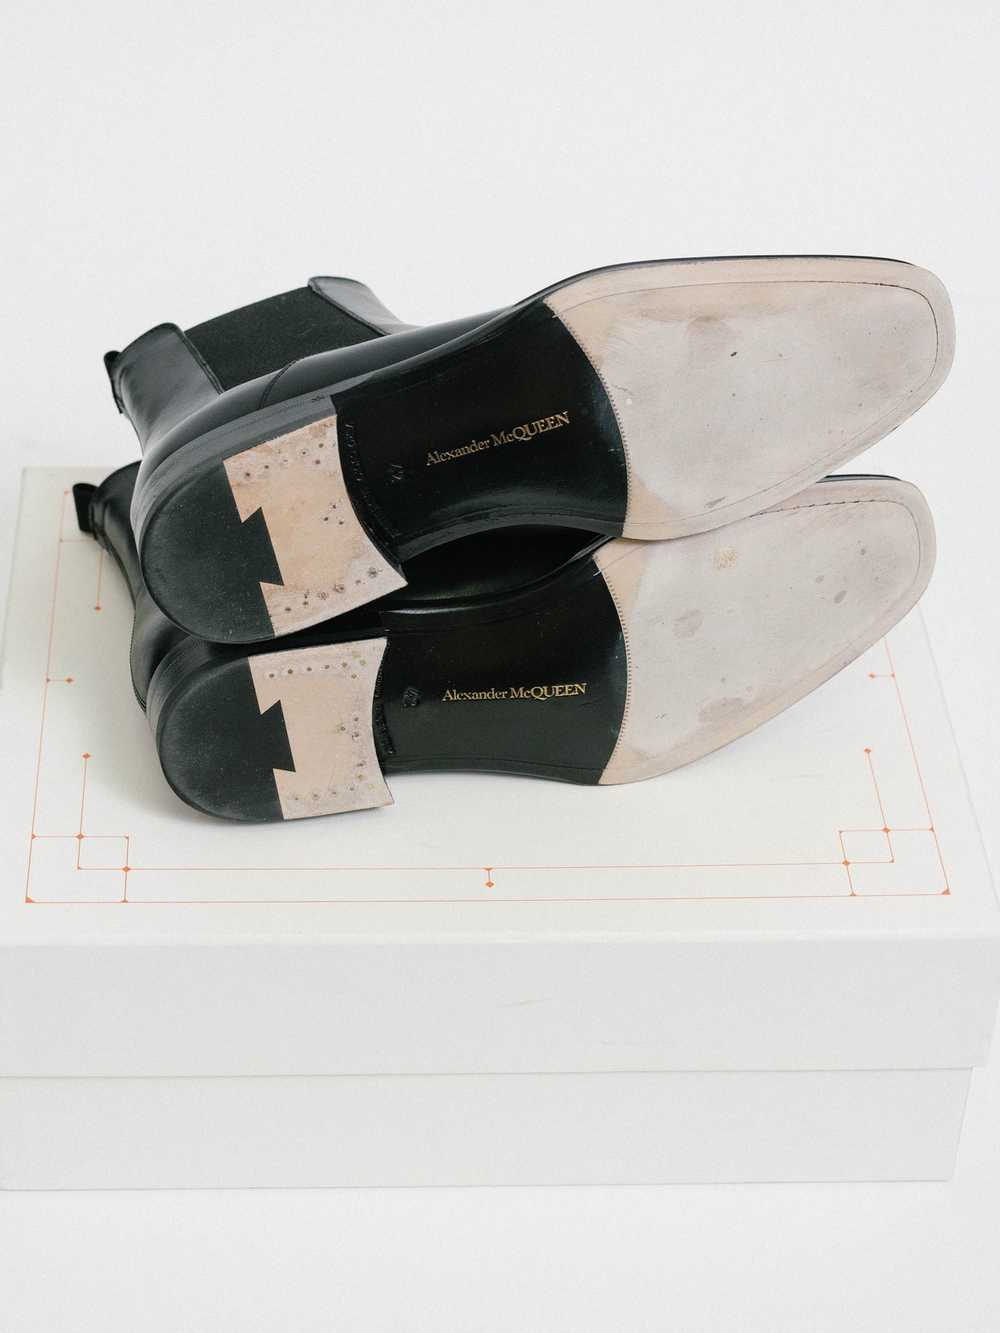 Alexander McQueen Chelsea Leather Boot - Alexande… - image 7